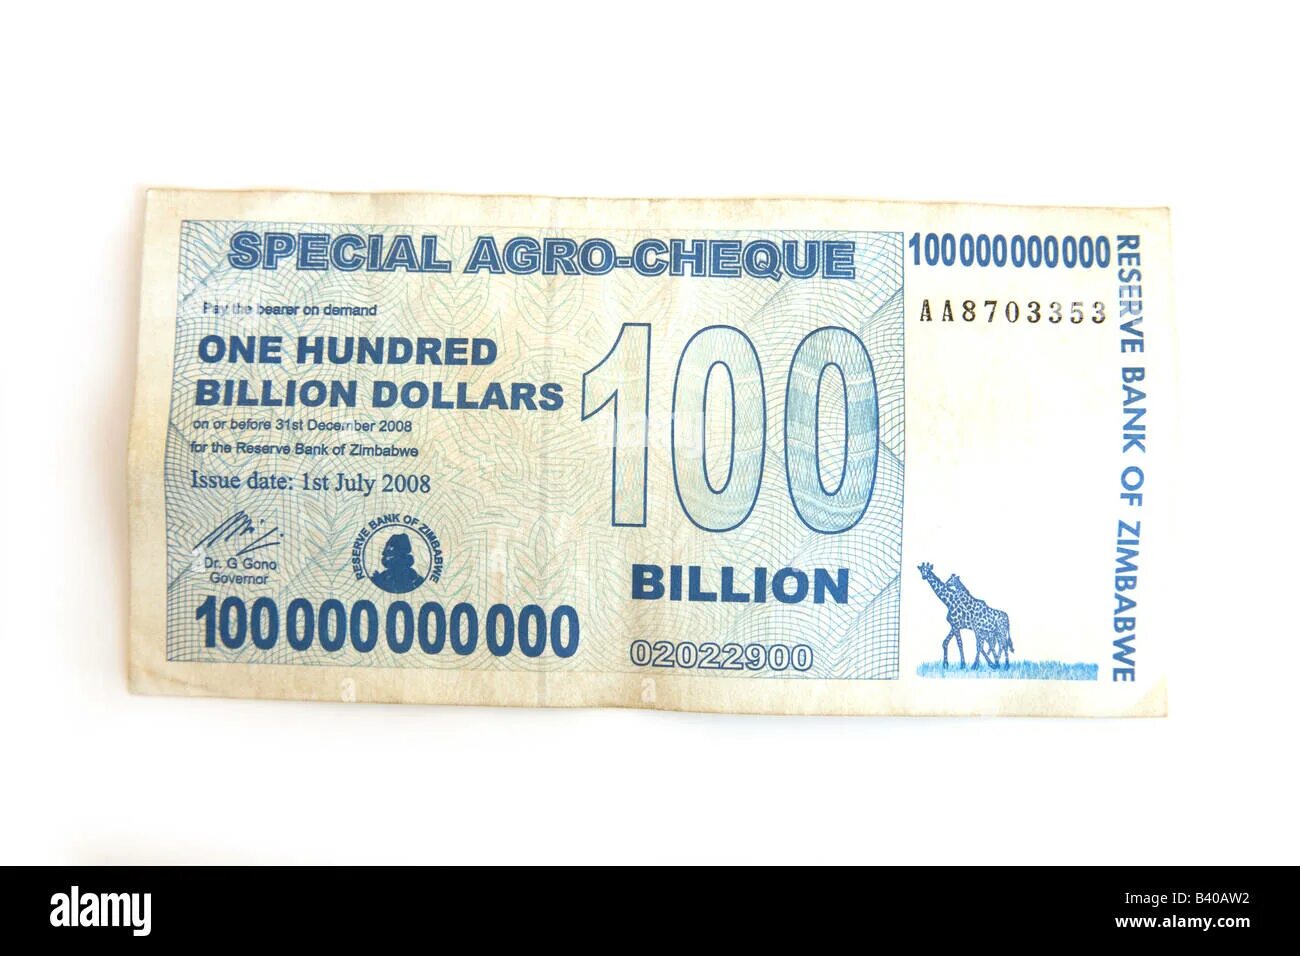 Сколько 2 плюс 1000000000. Зимбабвийский доллар 100 триллионов. 100000000000 Долларов. 100 Миллиардов зимбабвийских долларов. 100 Млрд долларов Зимбабве.